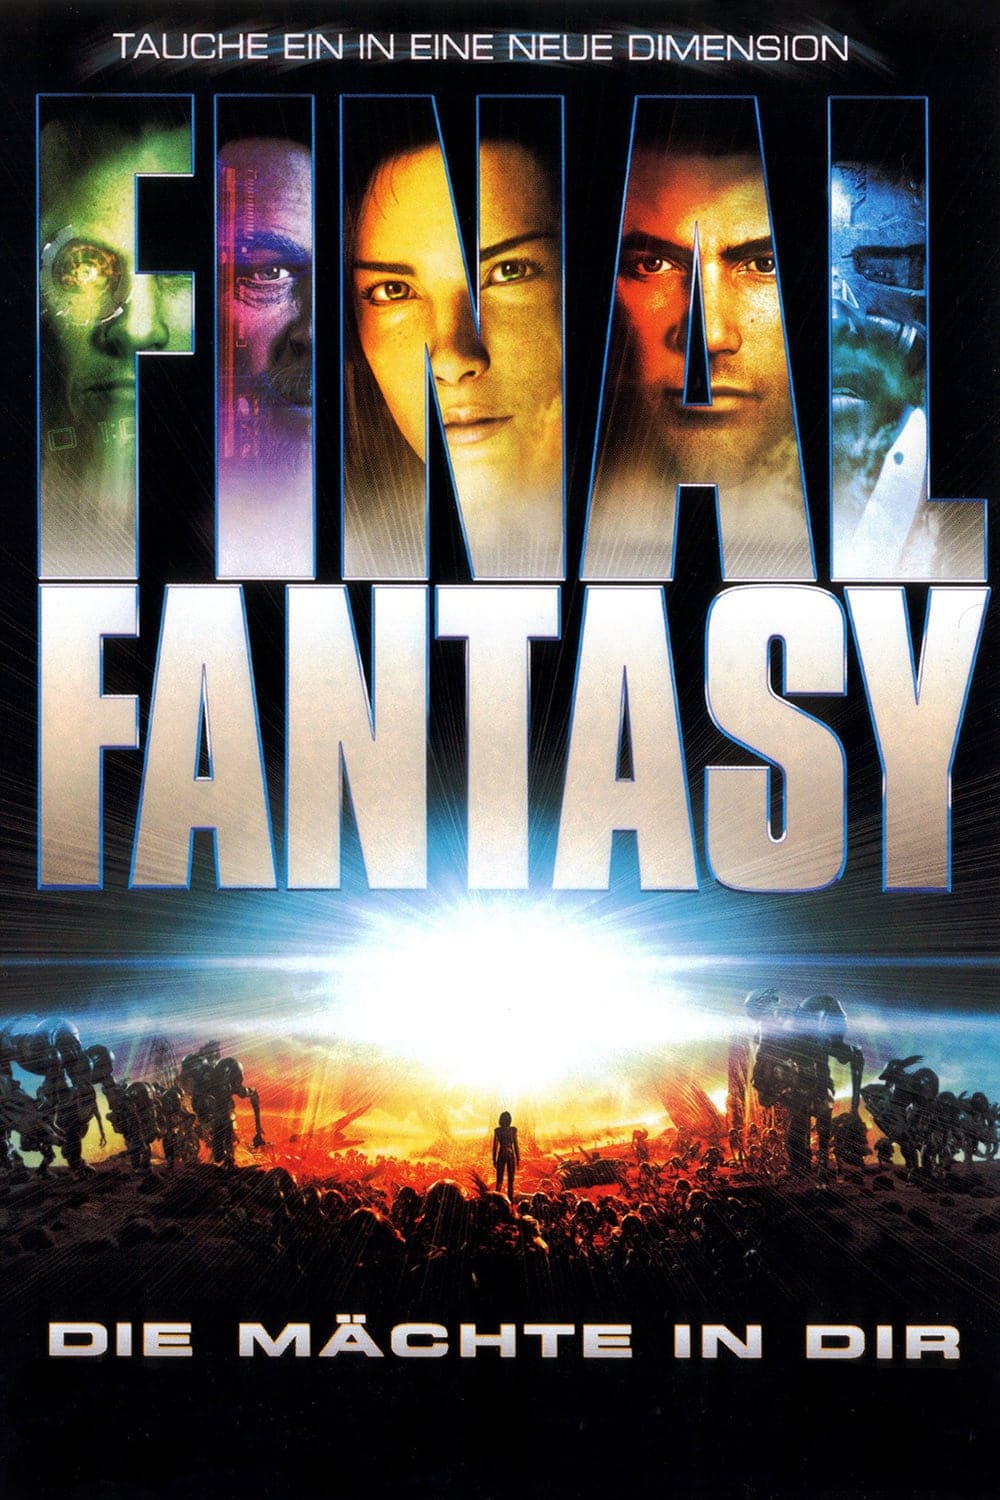 Plakat von "Final Fantasy - Die Mächte in dir"